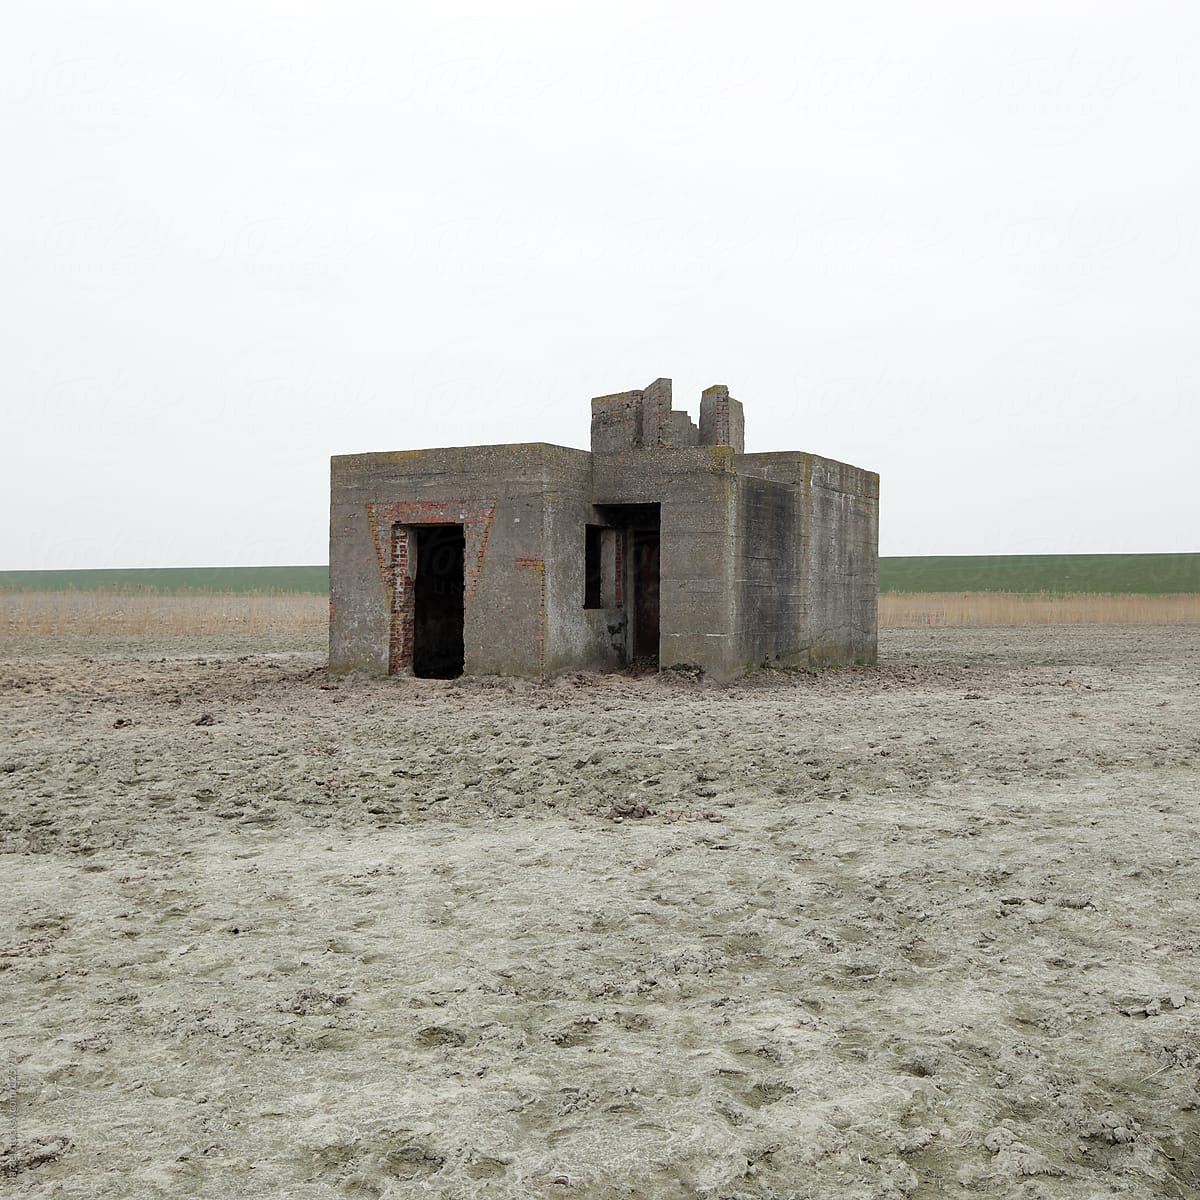 Old bunker in a field